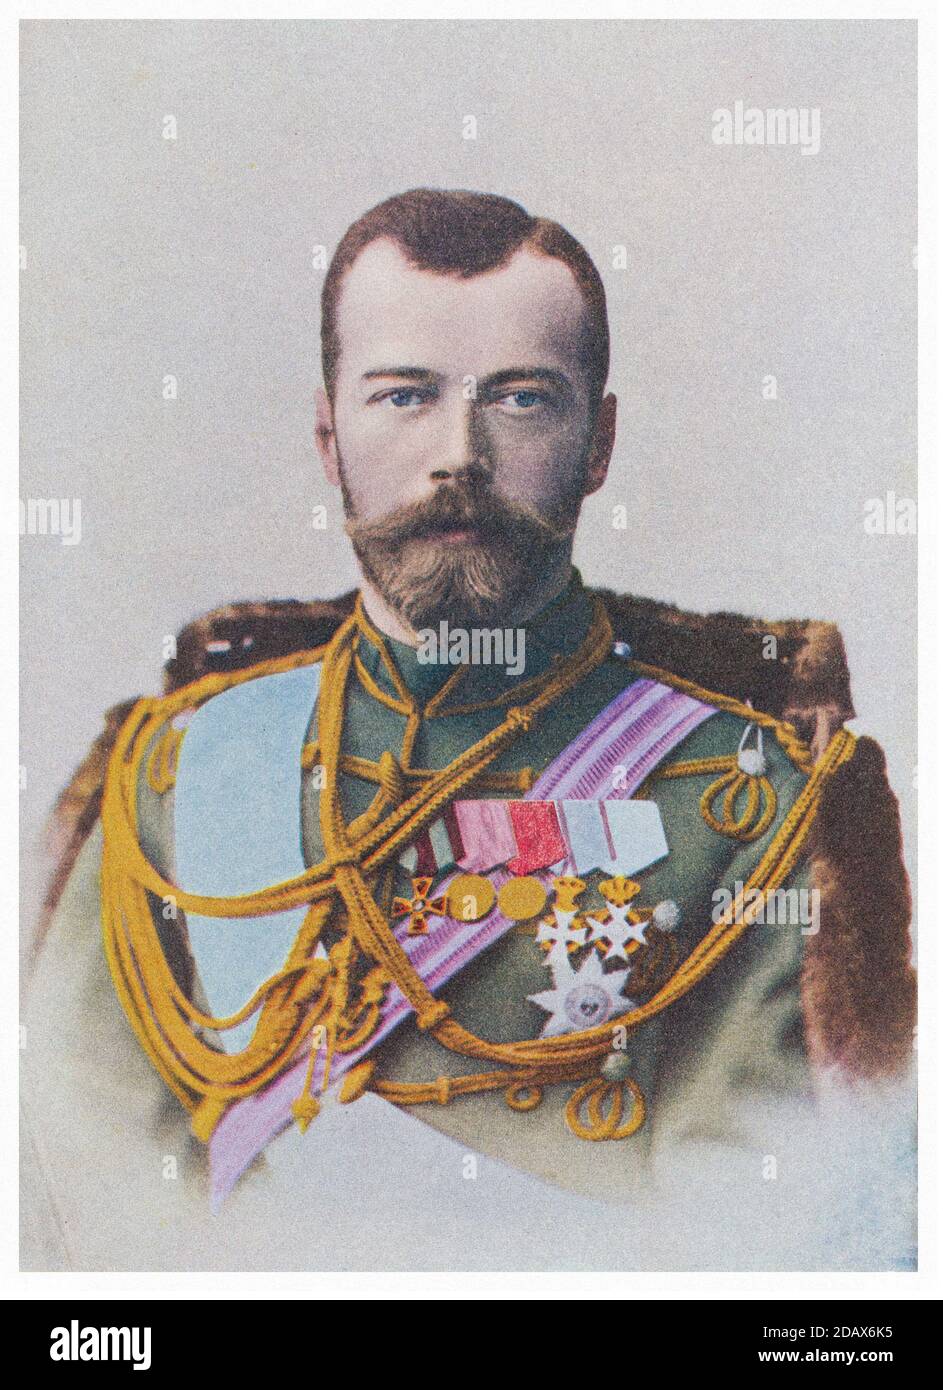 Farbige Retro-Foto von Nikolaus II von Russland. Nikolaus II. Oder Nikolai II. Alexandrowitsch Romanow (1868 – 1918), bekannt in der russisch-orthodoxen Kirche als Stockfoto